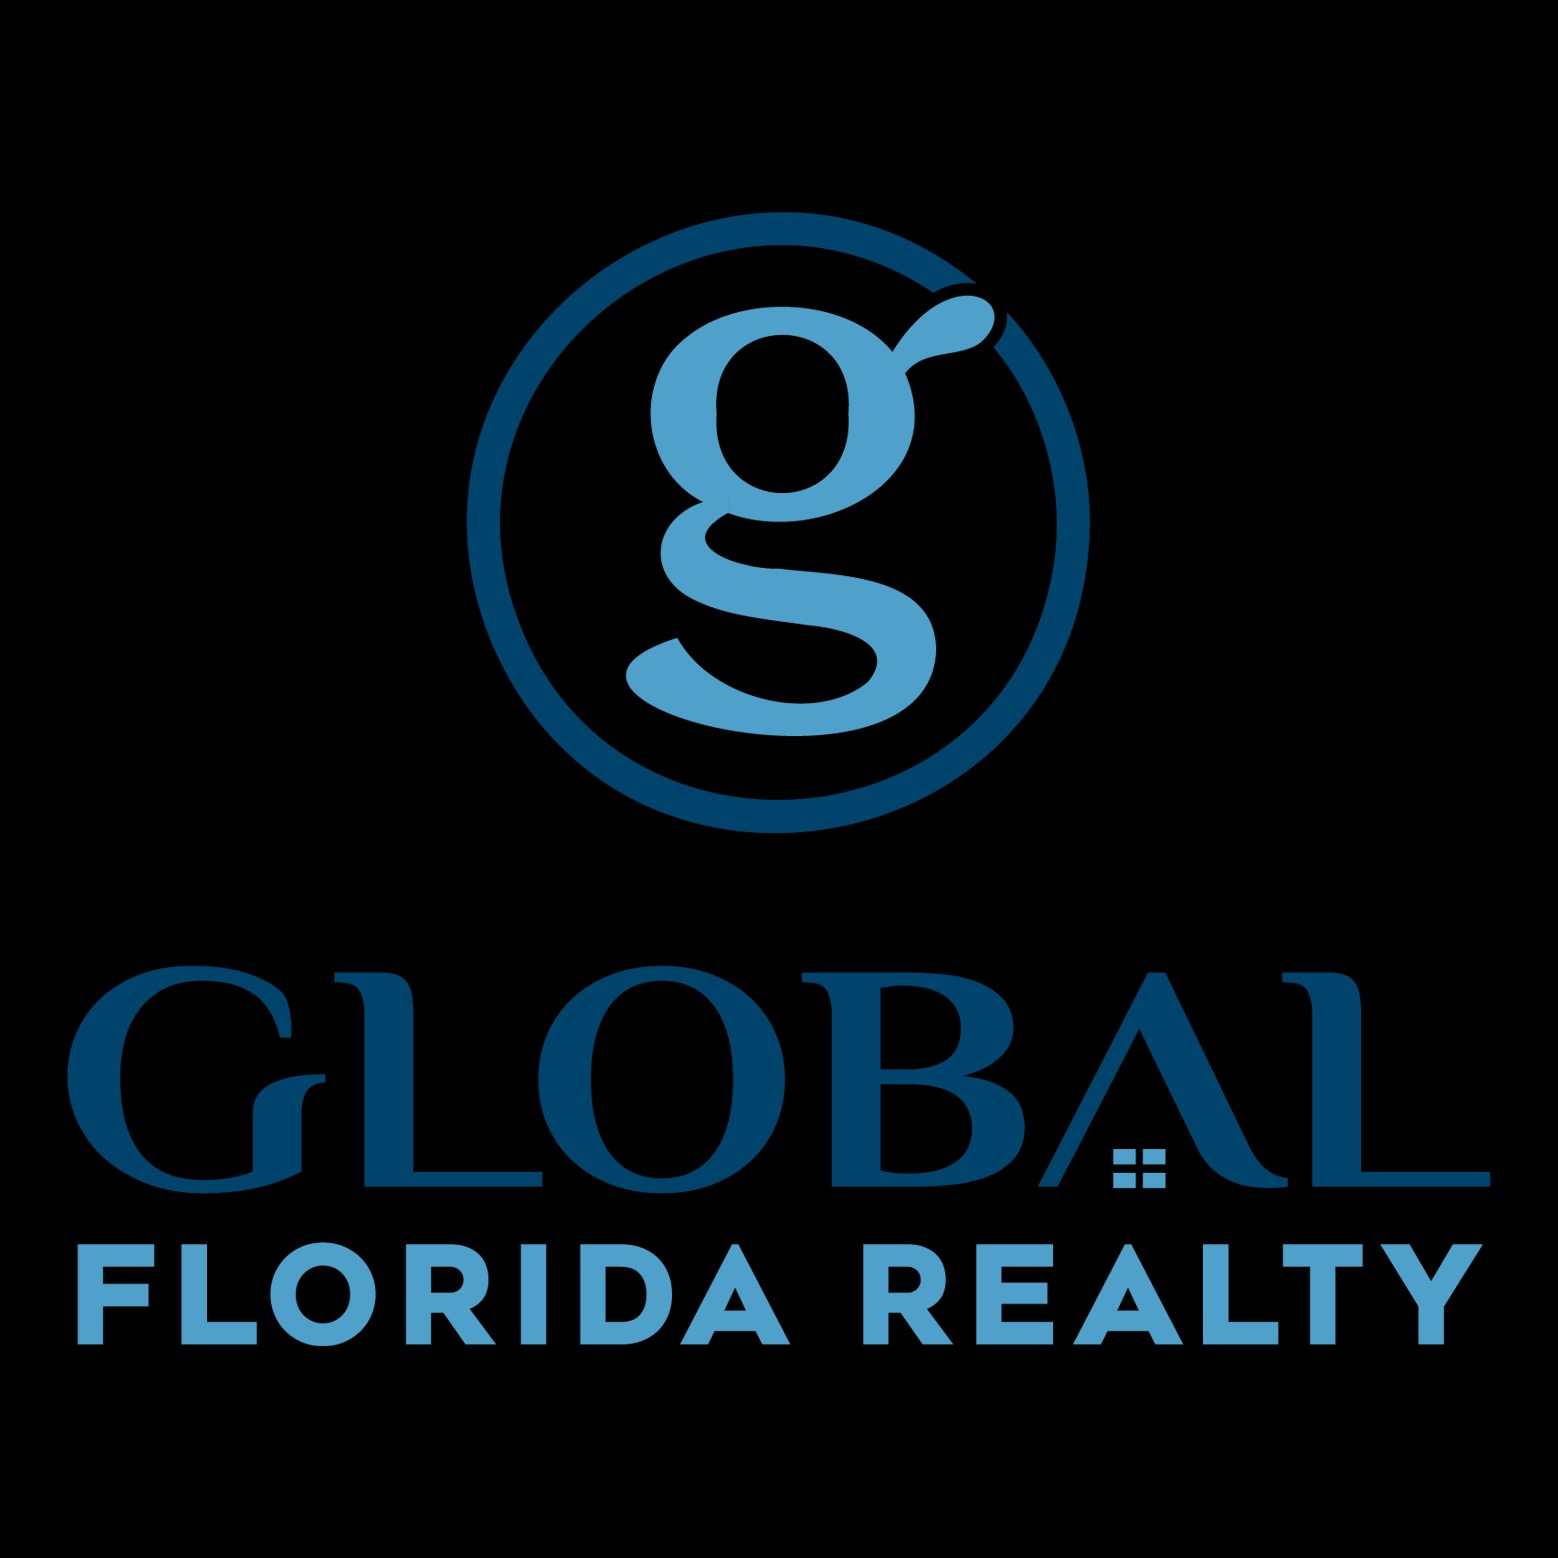 Global Florida Realty